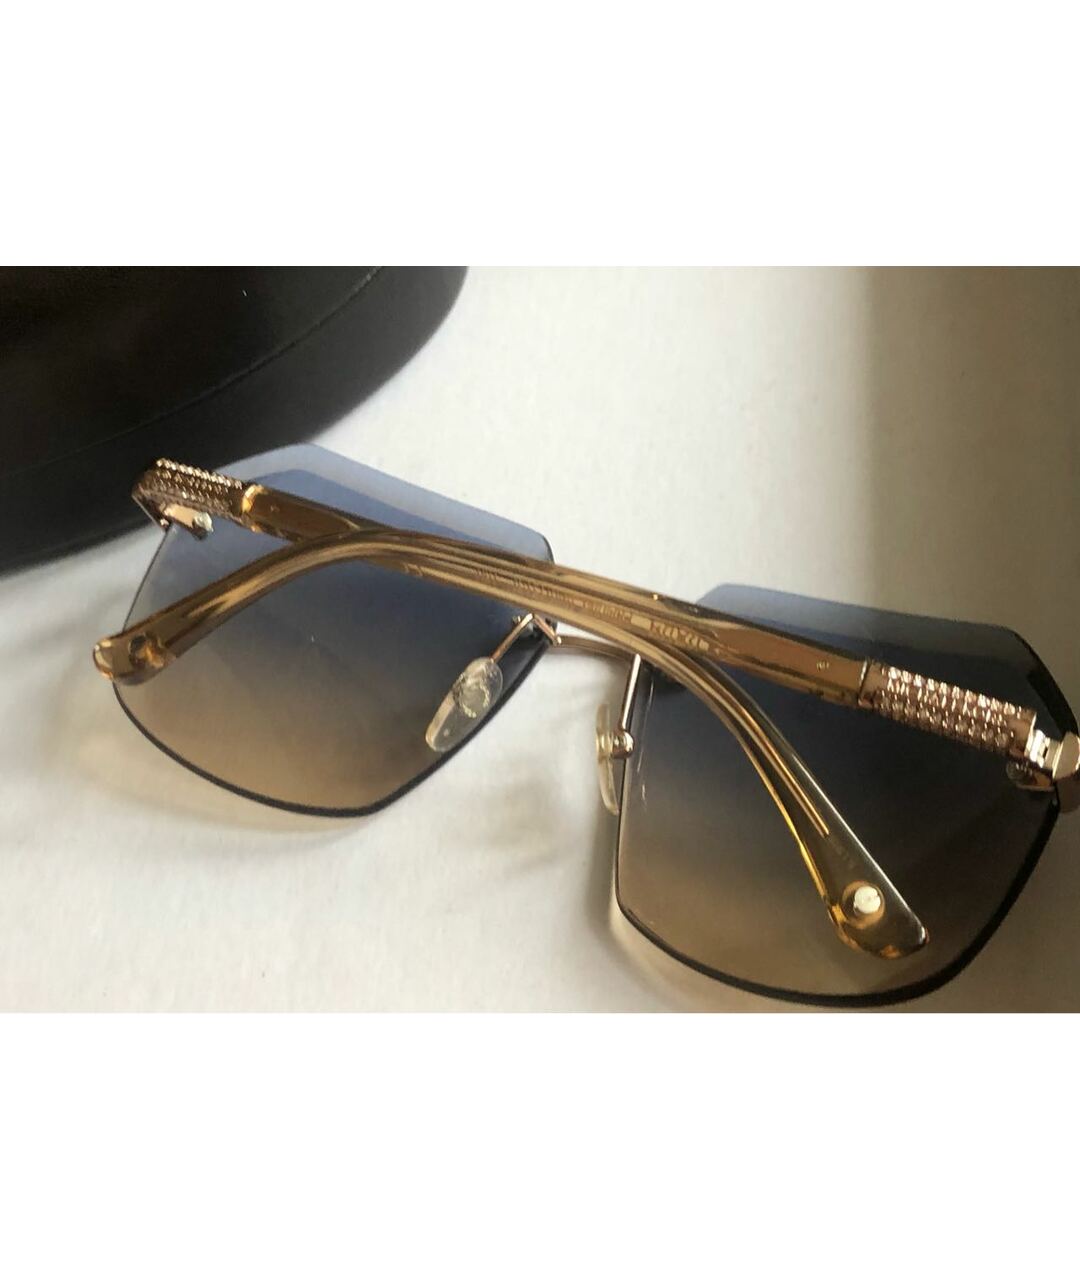 MICHAEL KORS Золотые металлические солнцезащитные очки, фото 4